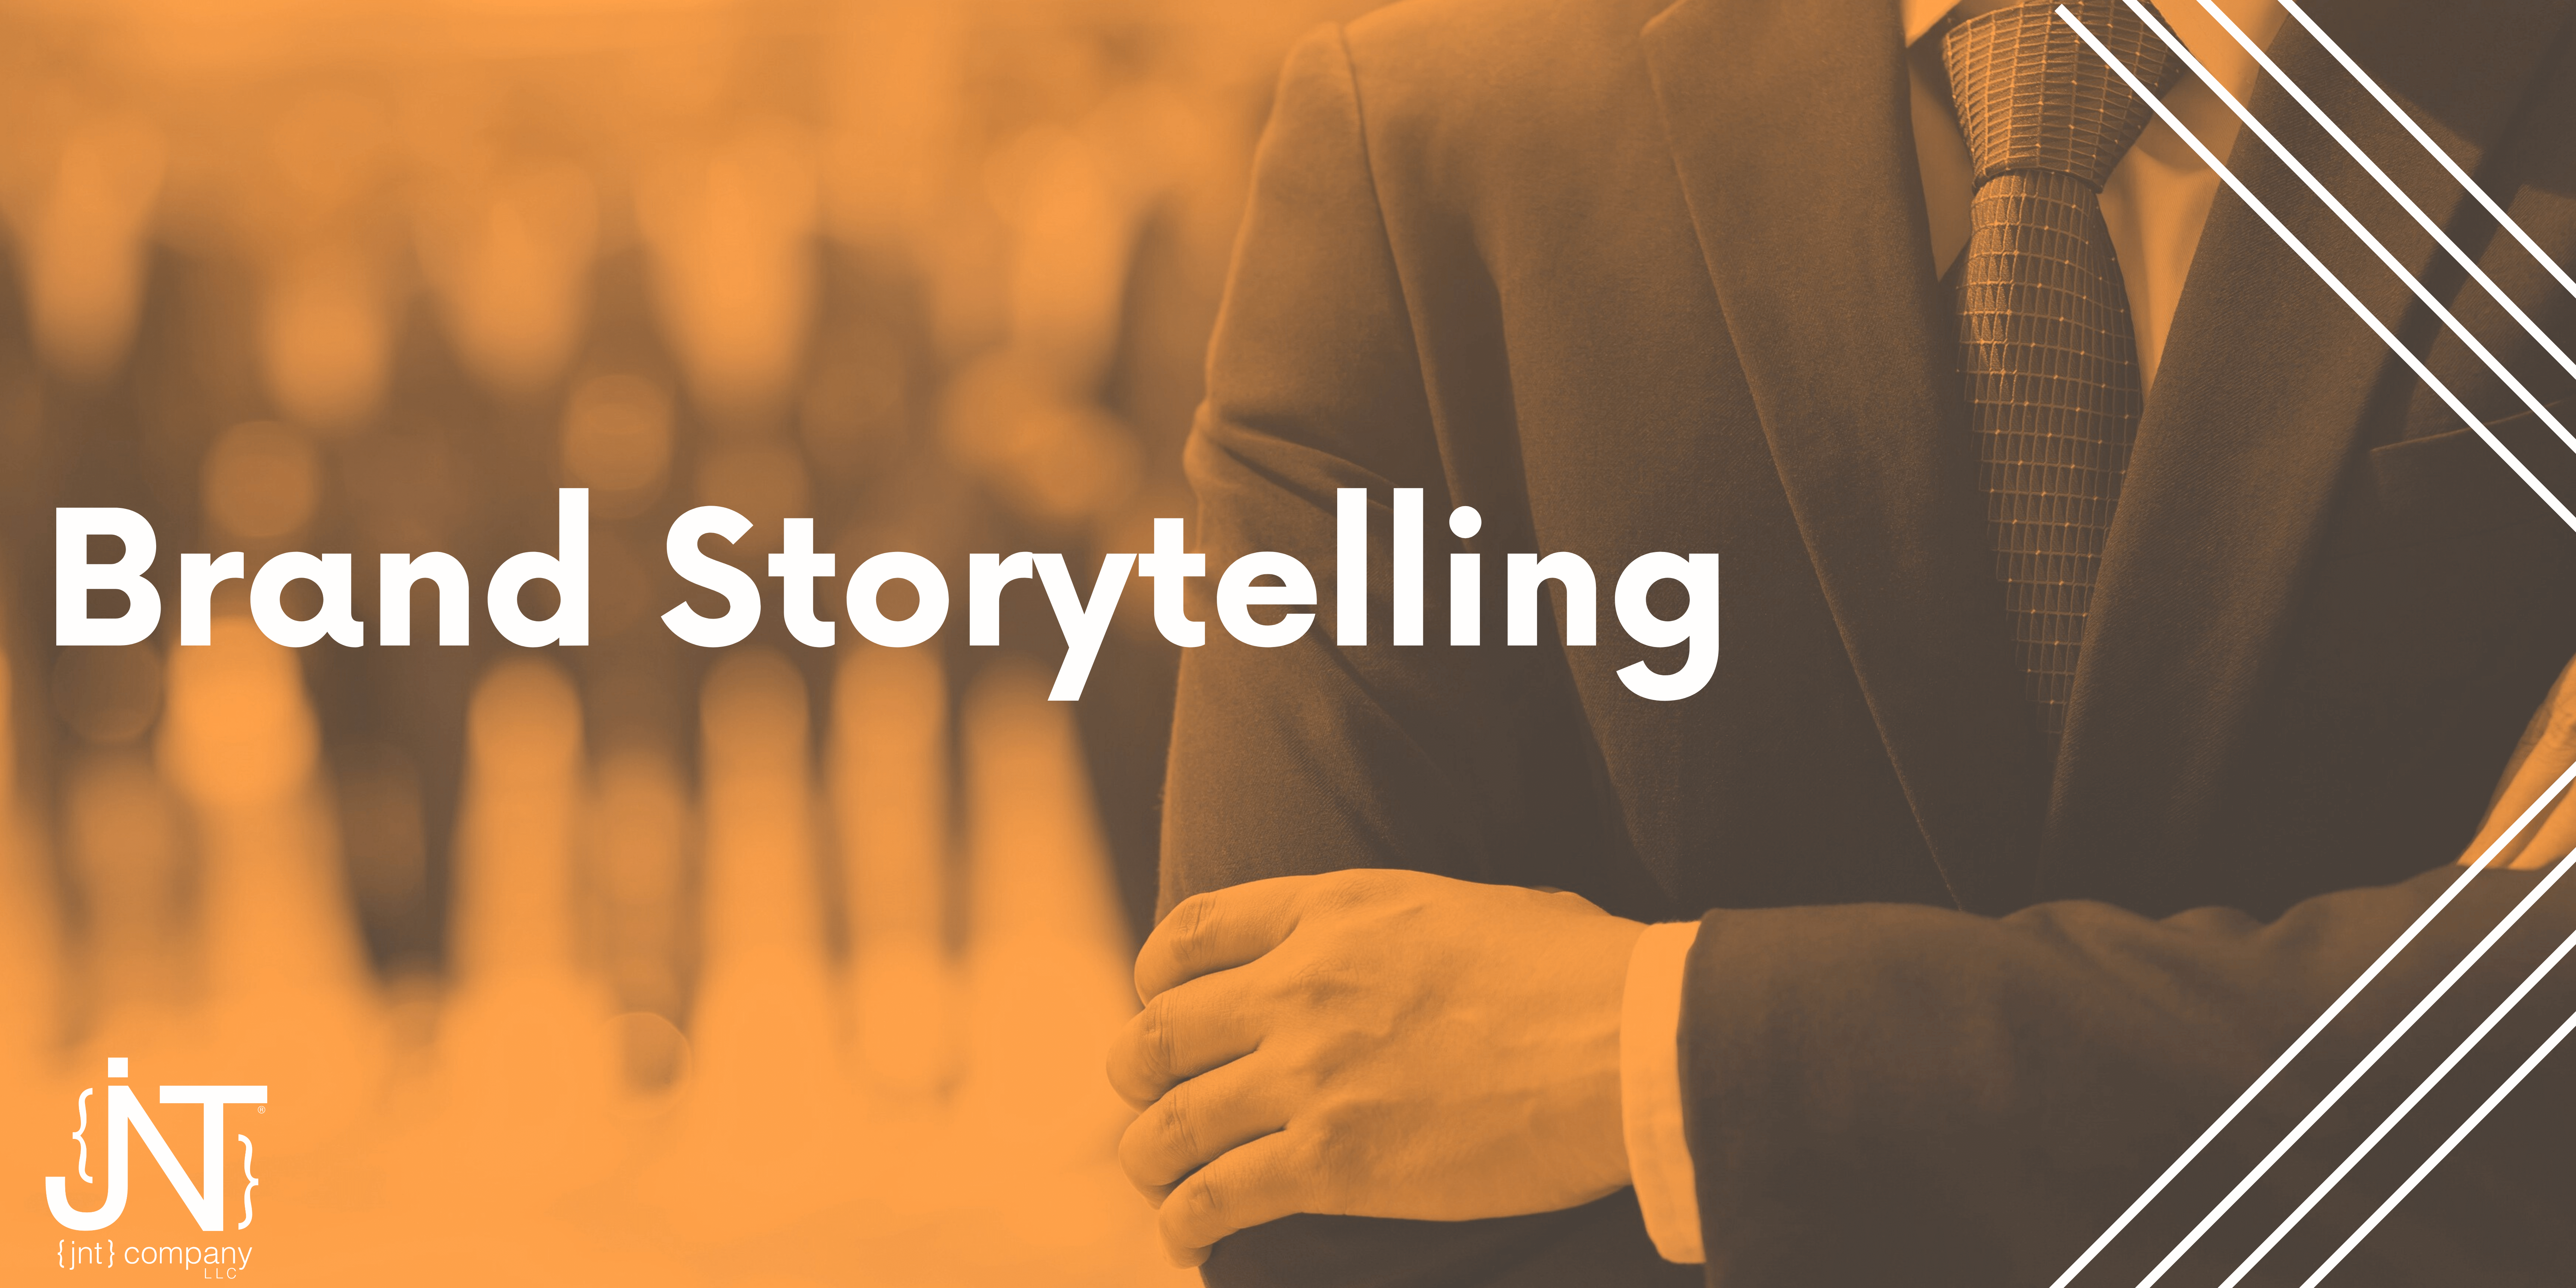 Brand storytelling photo